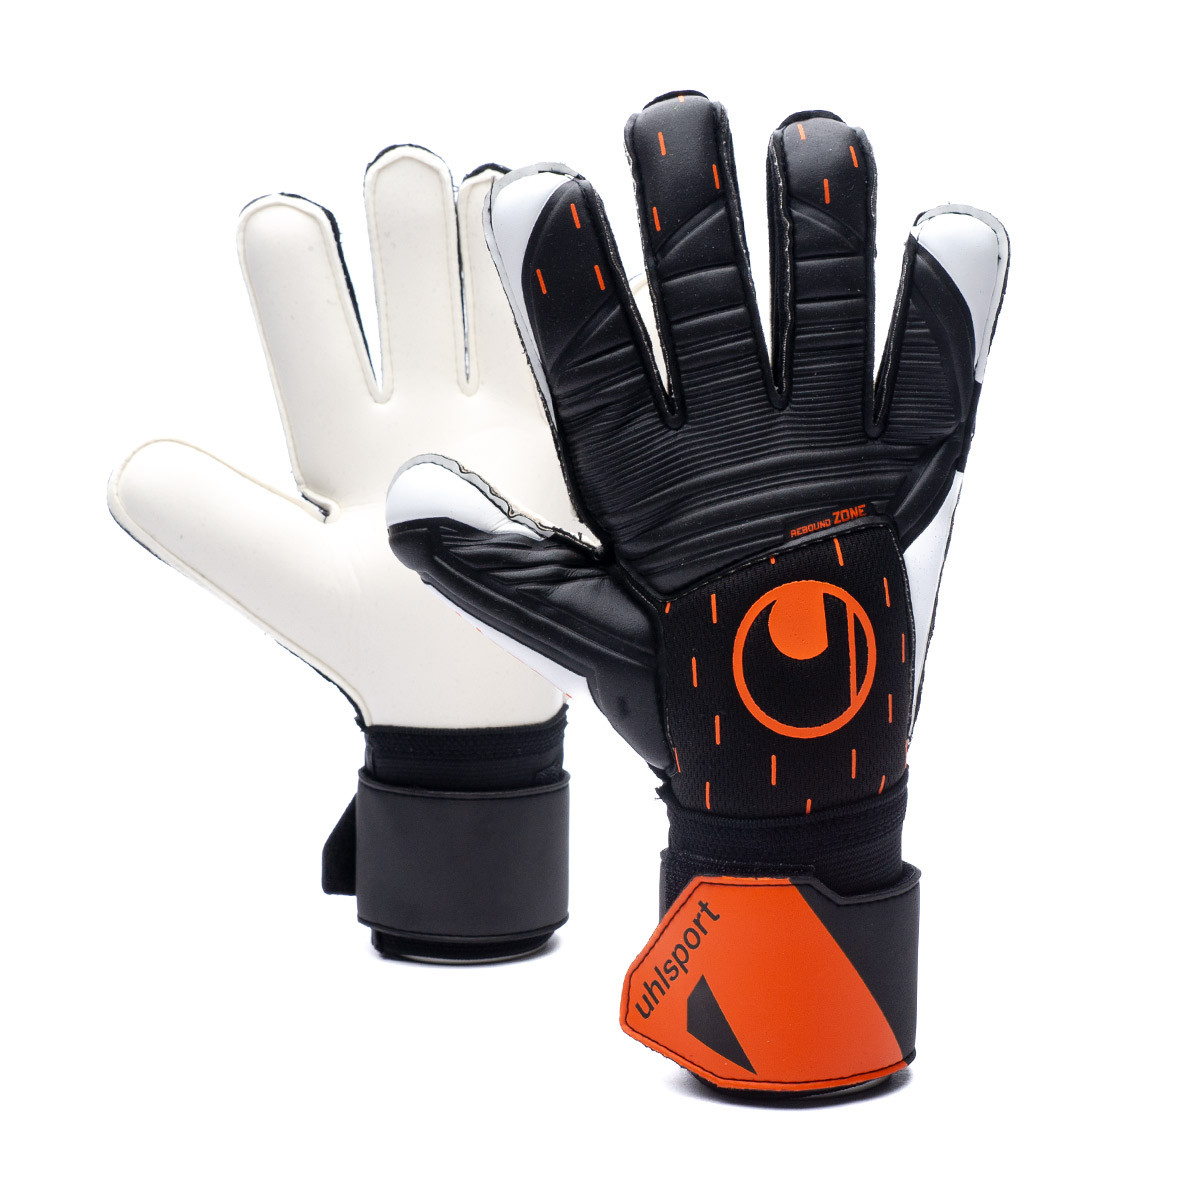 Glove Uhlsport Speed Pro Black-White-Fluor orange - Fútbol